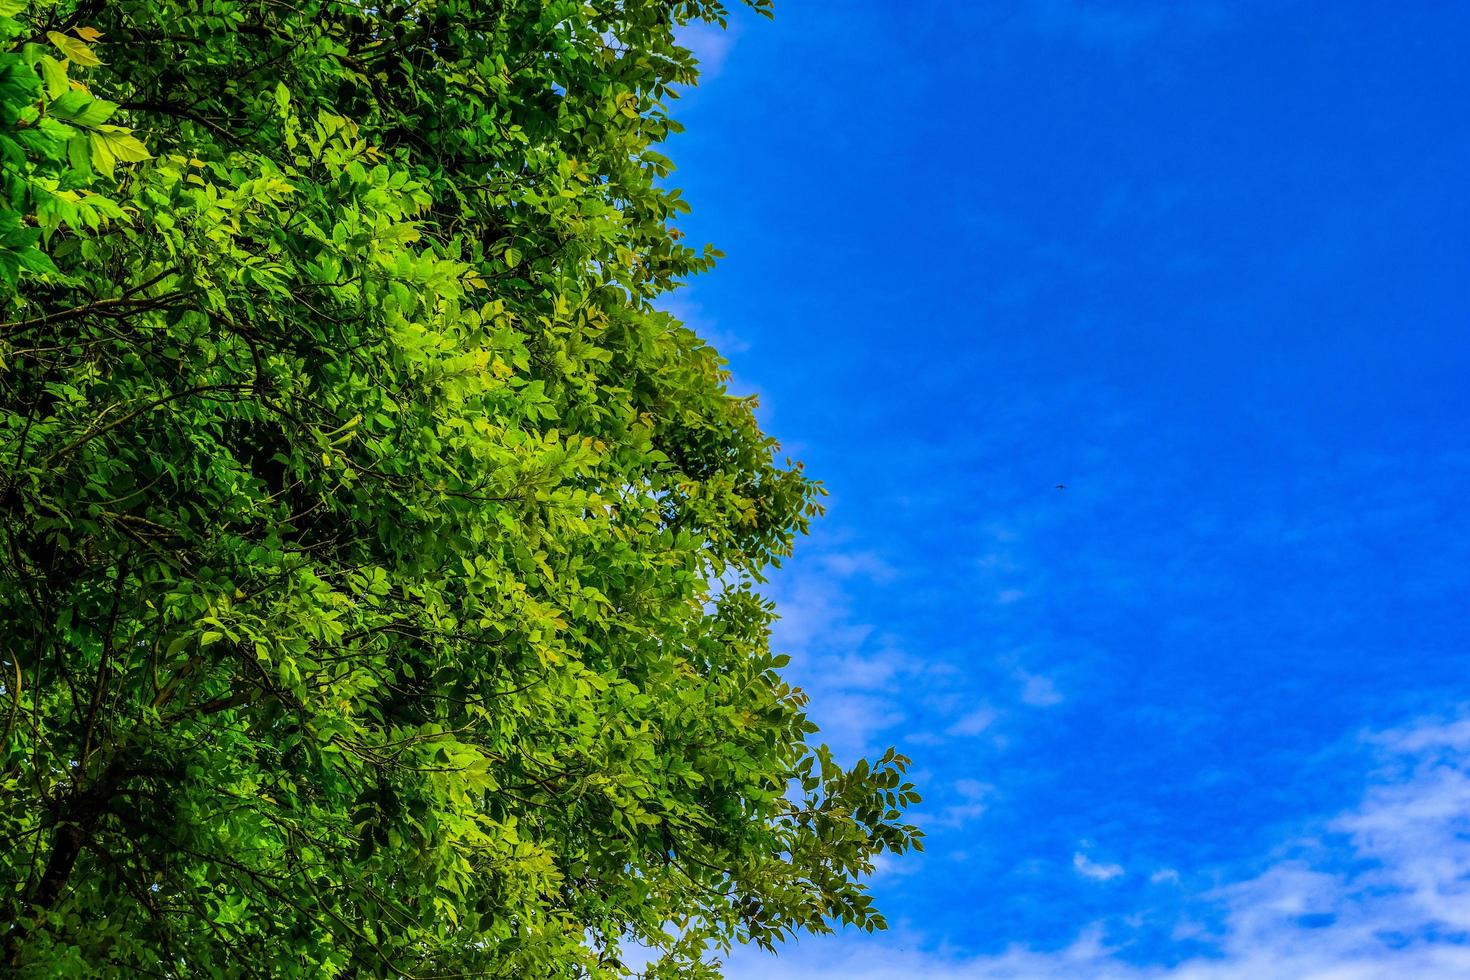 arbre de verdure contre avec ciel bleu clair qui peut faire émotion de fraîcheur. photo